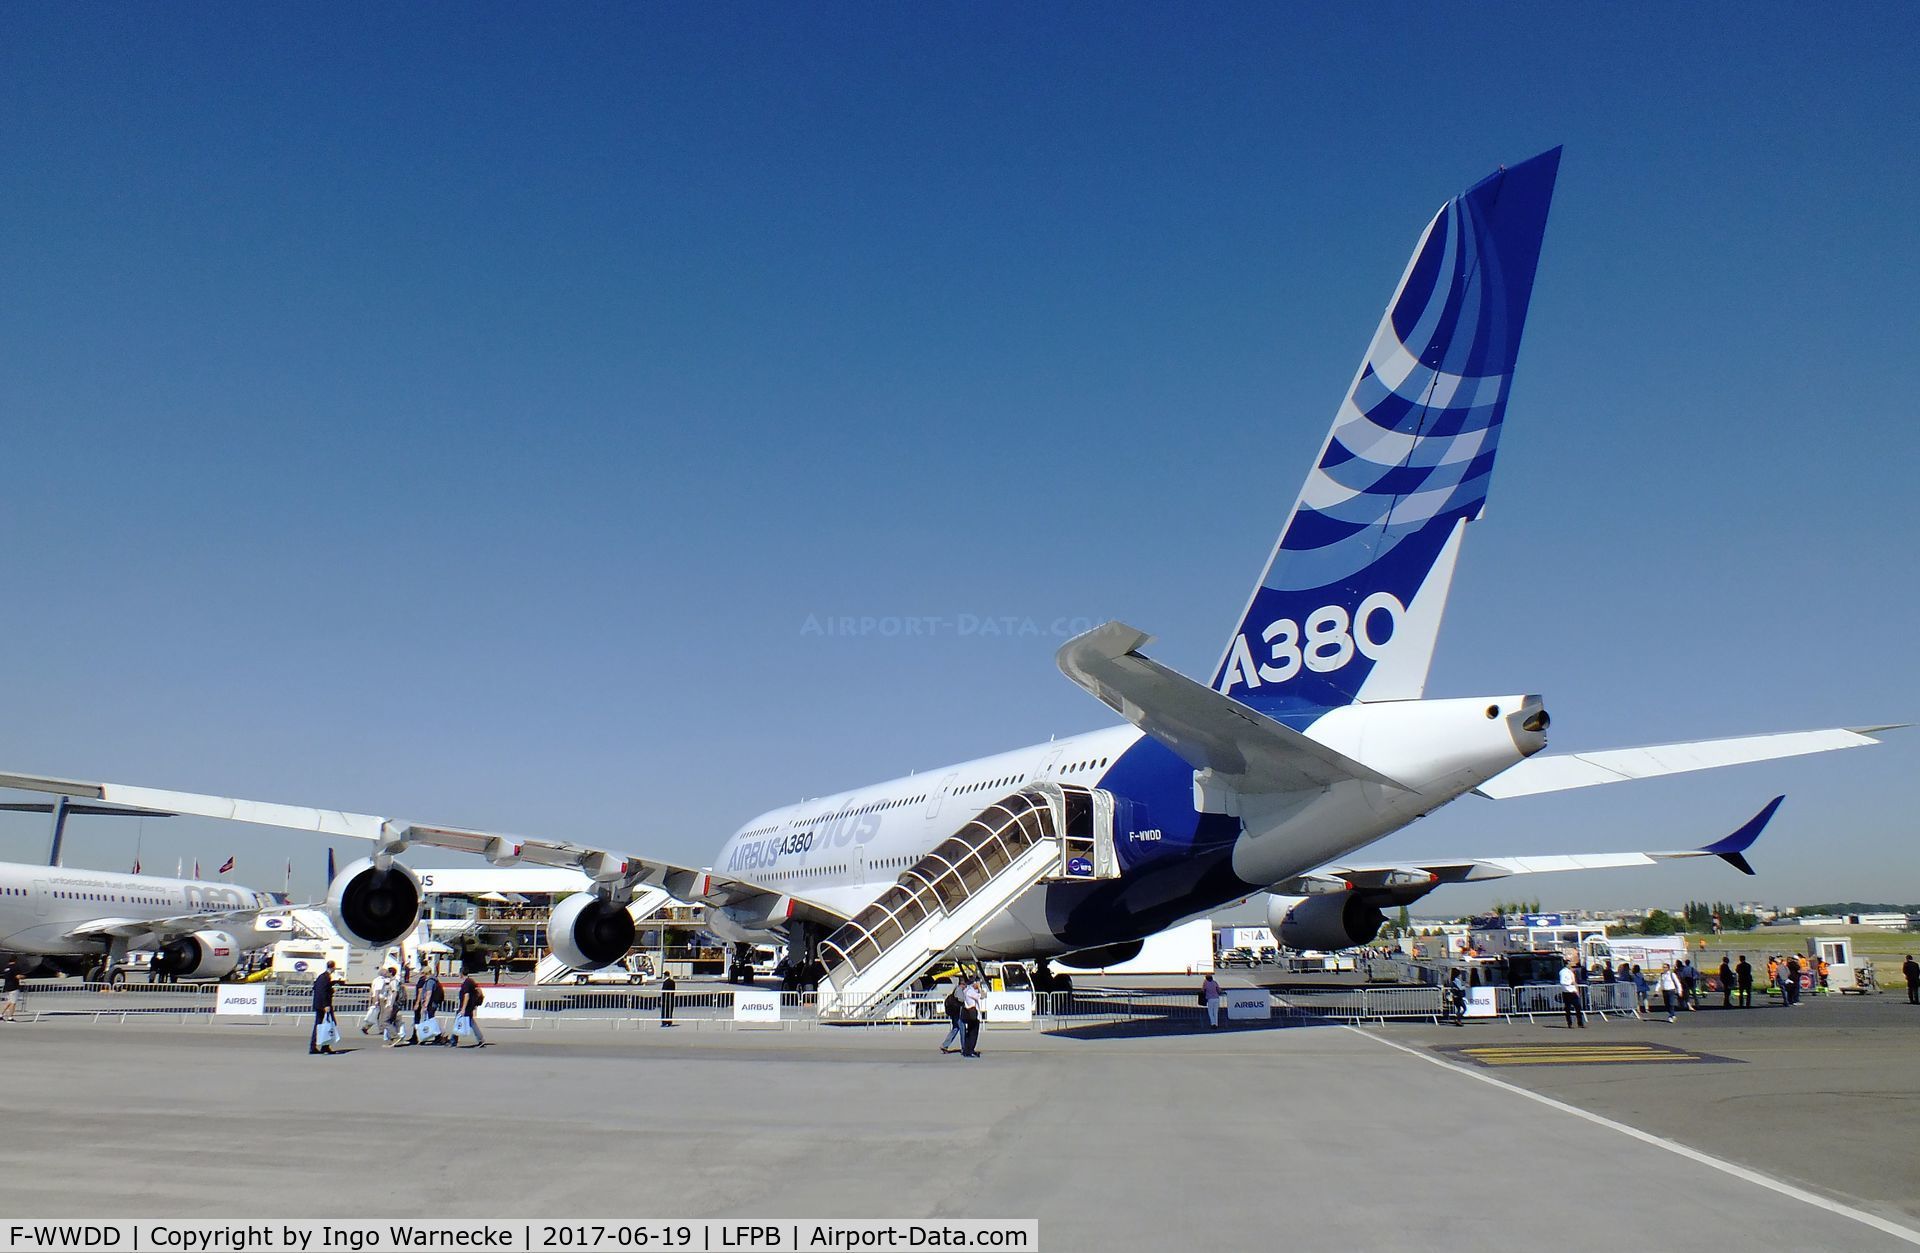 F-WWDD, 2005 Airbus A380-861 C/N 004, Airbus A380 Plus at the Aerosalon 2017, Paris